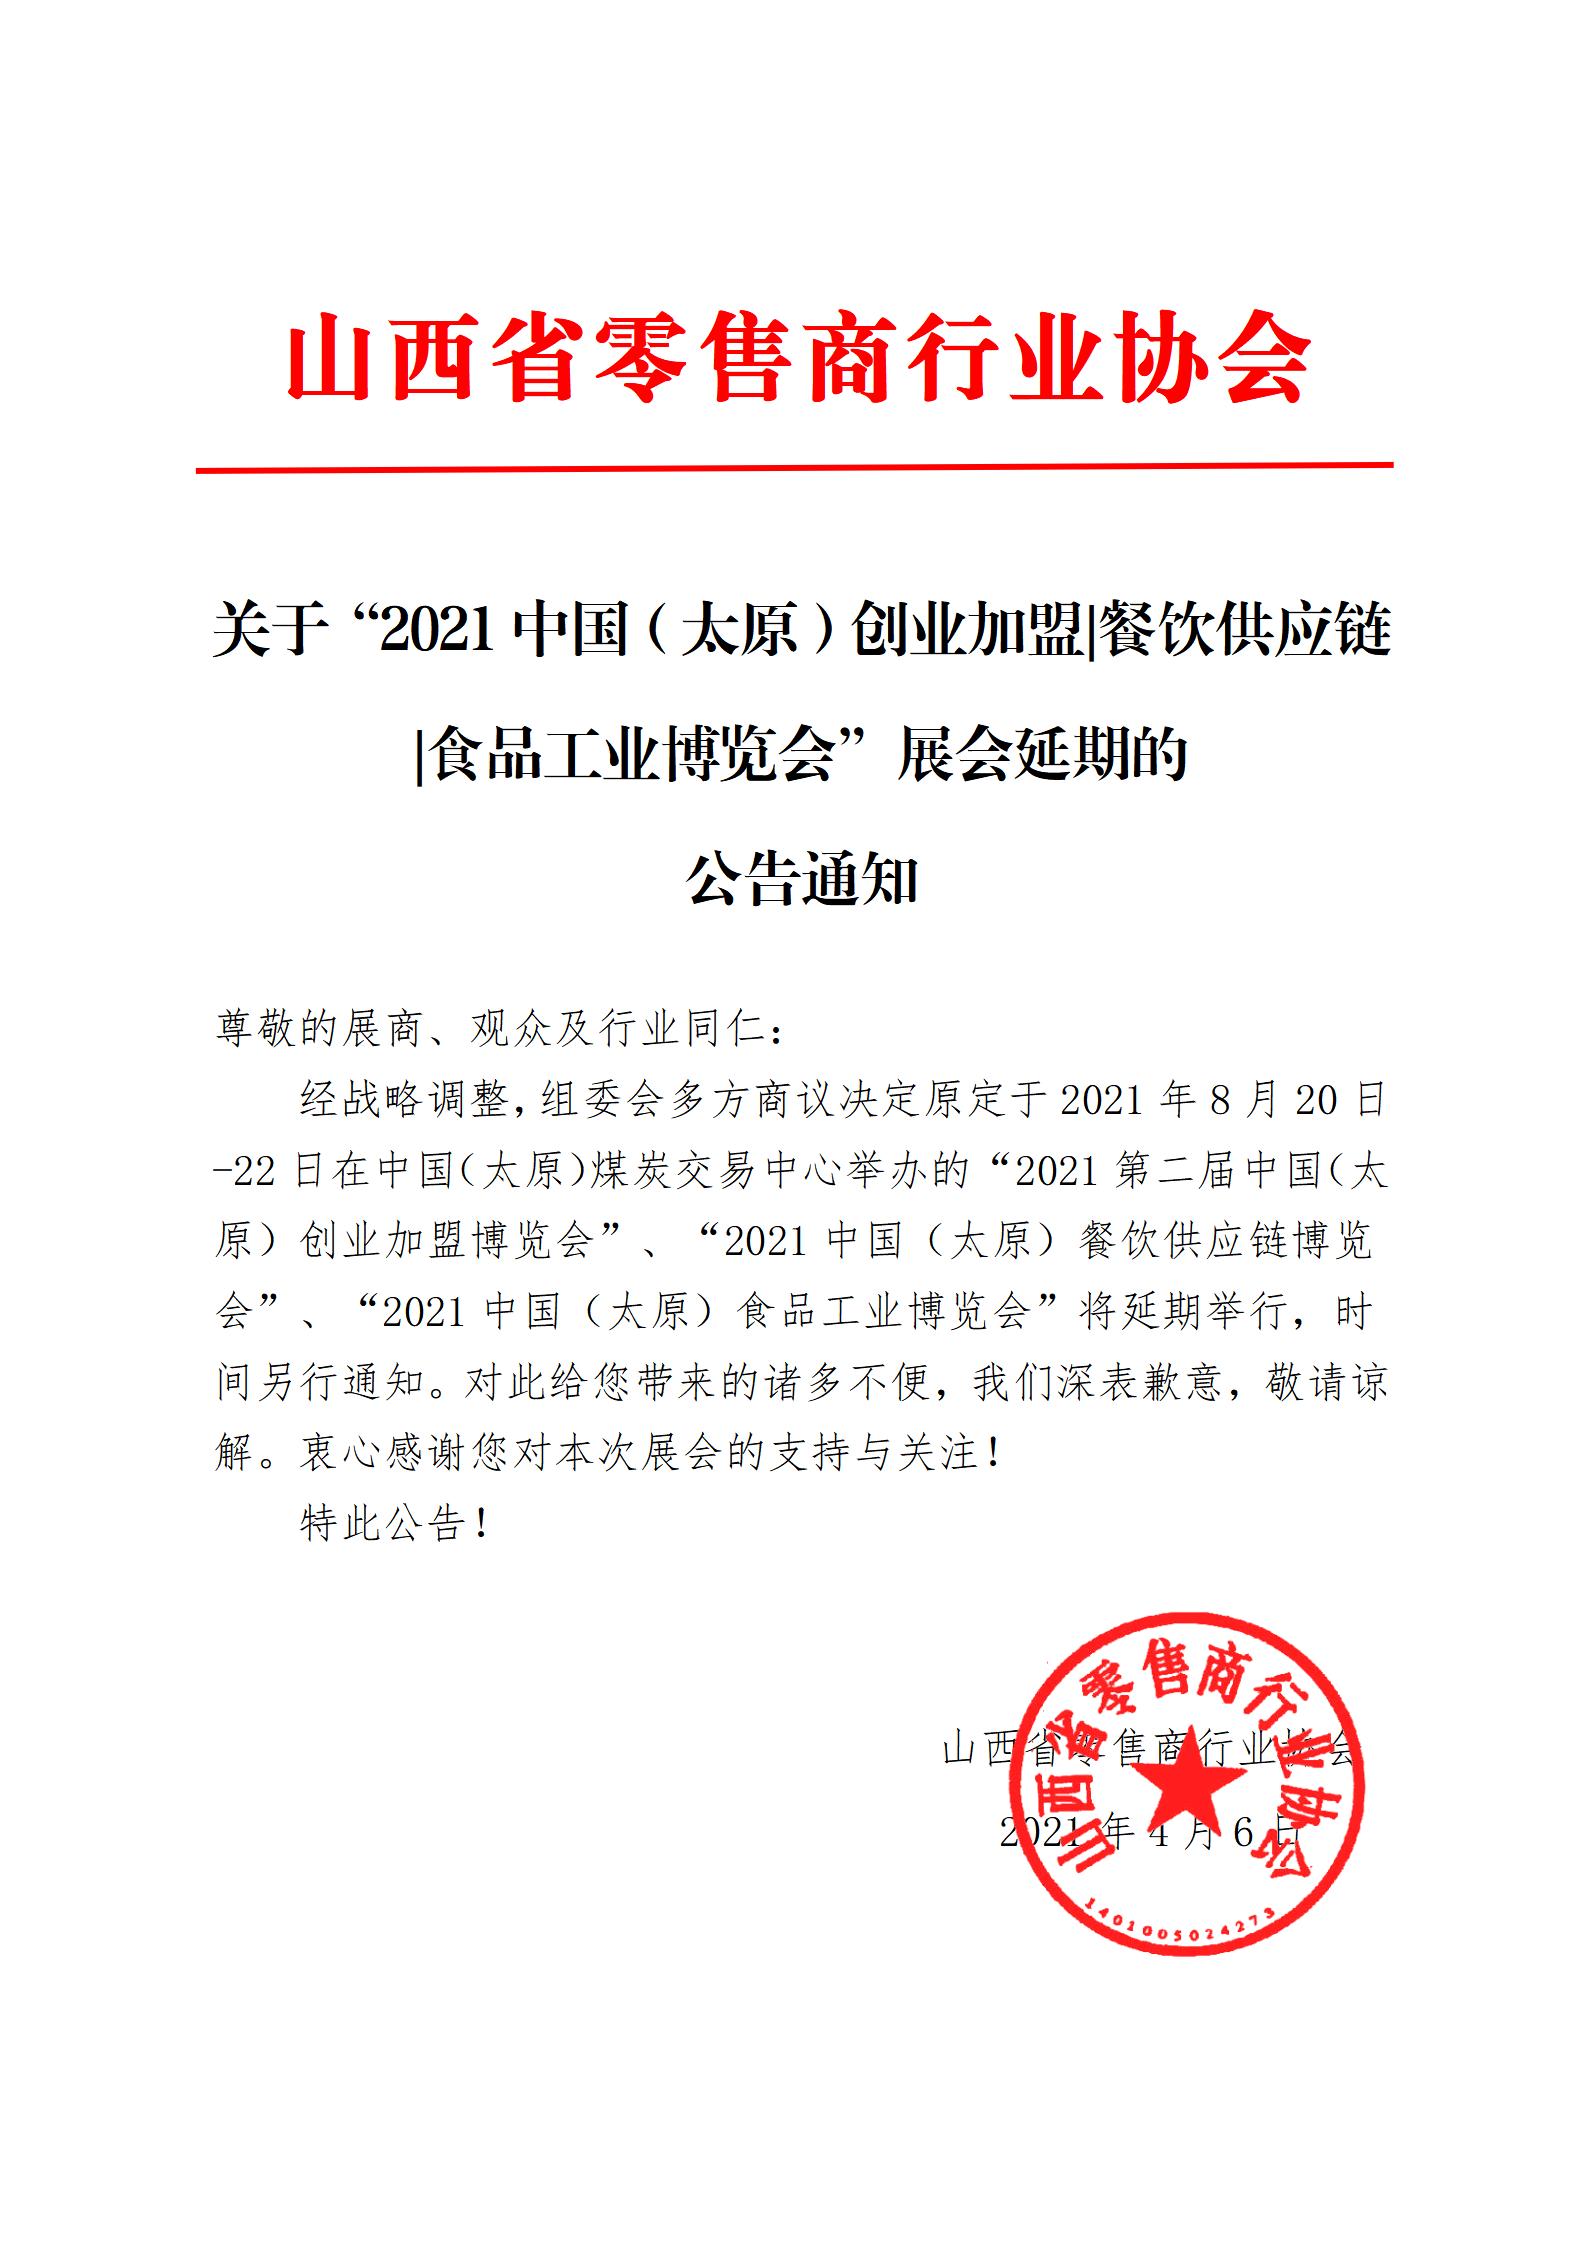 关于“2021中国（太原）创业加盟|餐饮供应链|食品工业博览会”展会延期的 公告通知(图1)